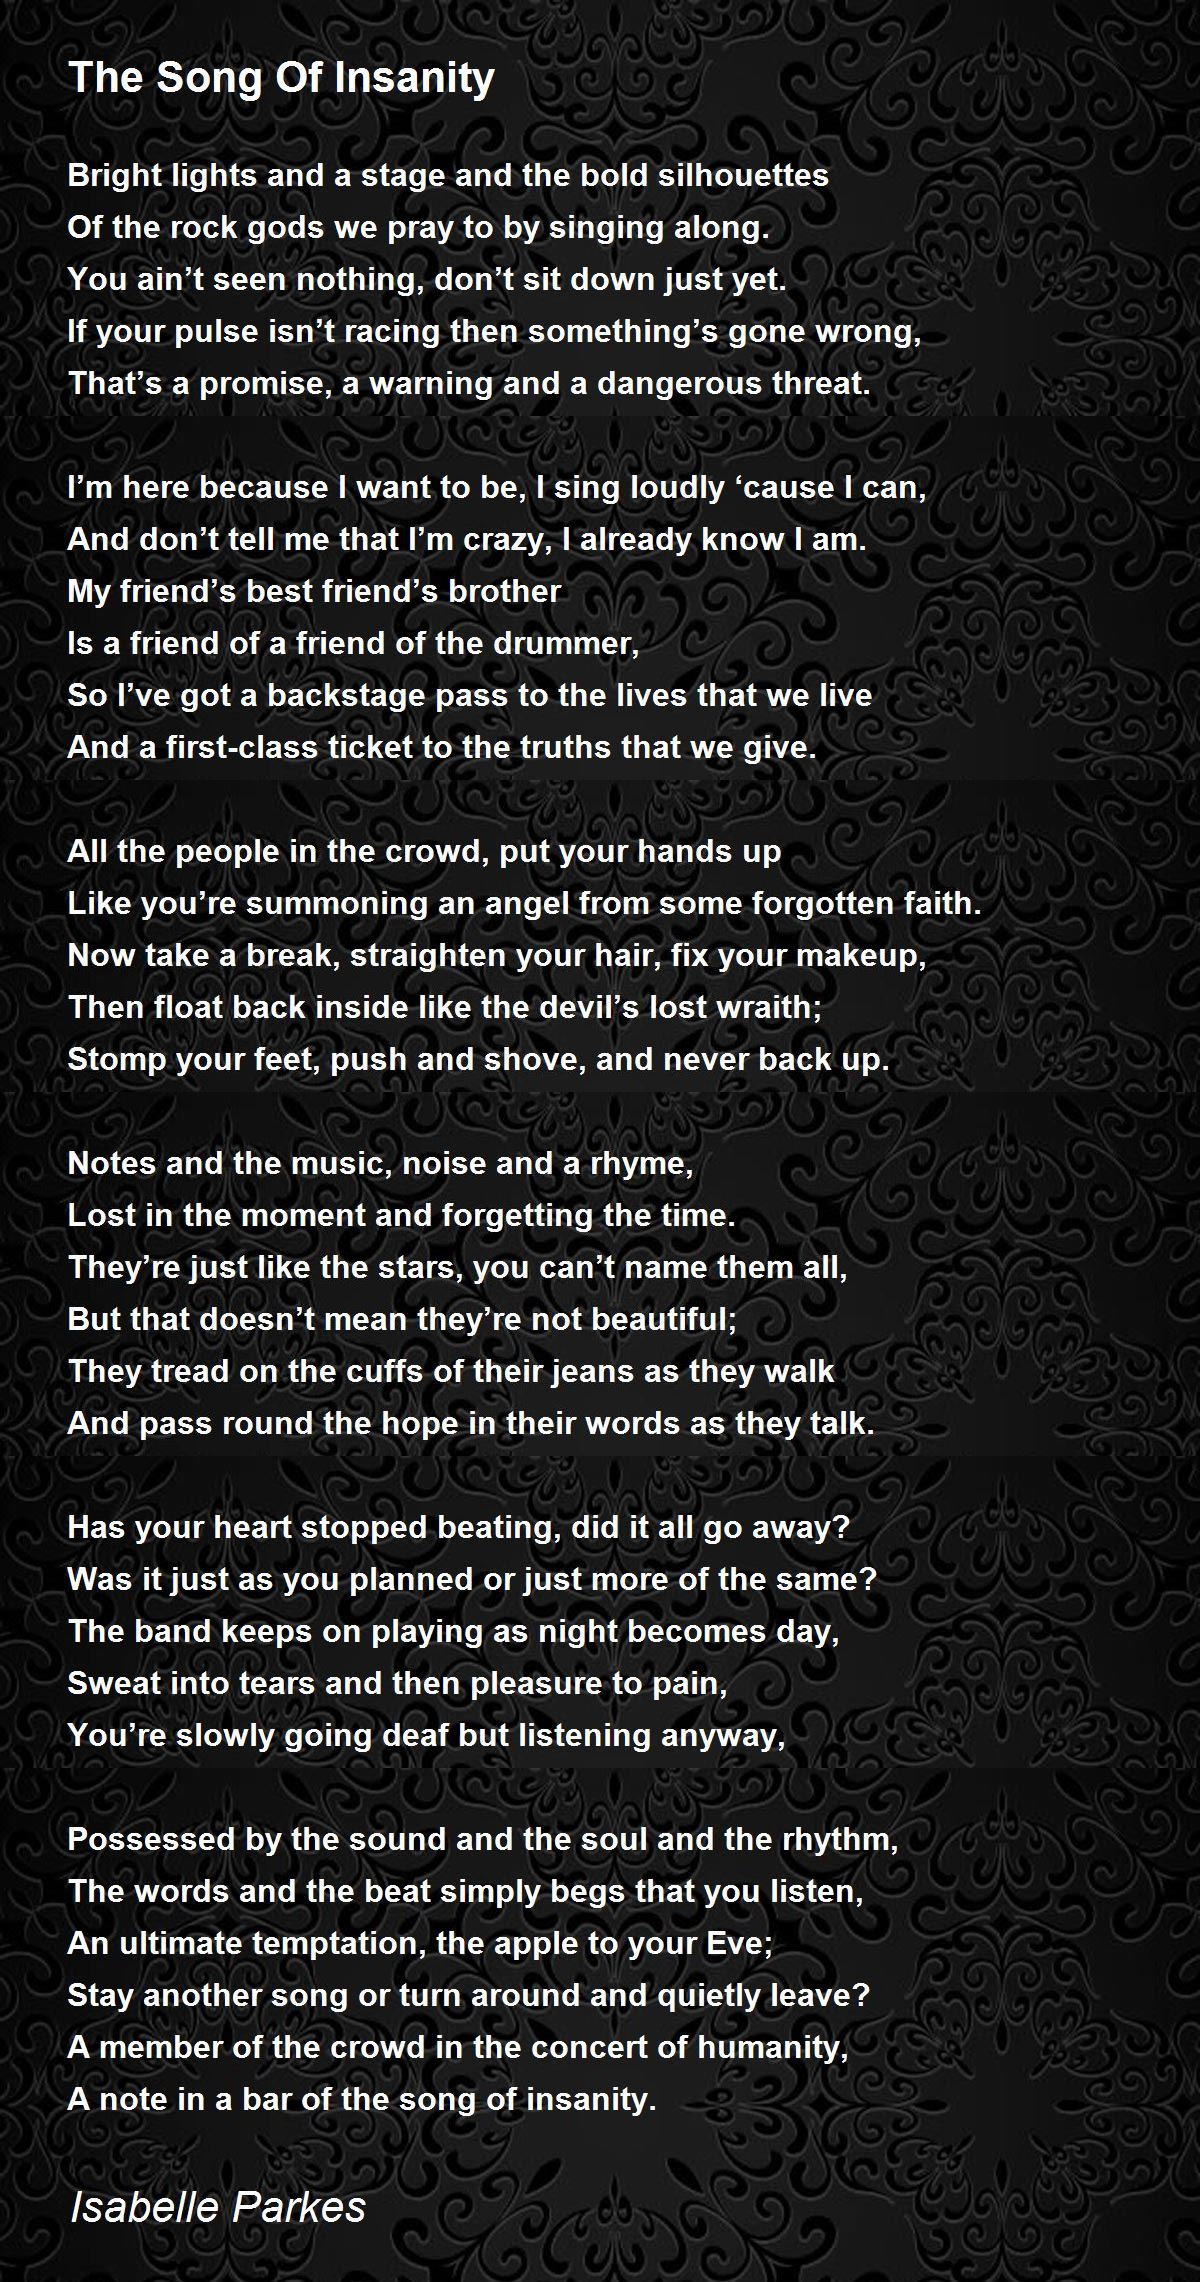 blotte skraber horisont The Song Of Insanity - The Song Of Insanity Poem by Isabelle Parkes